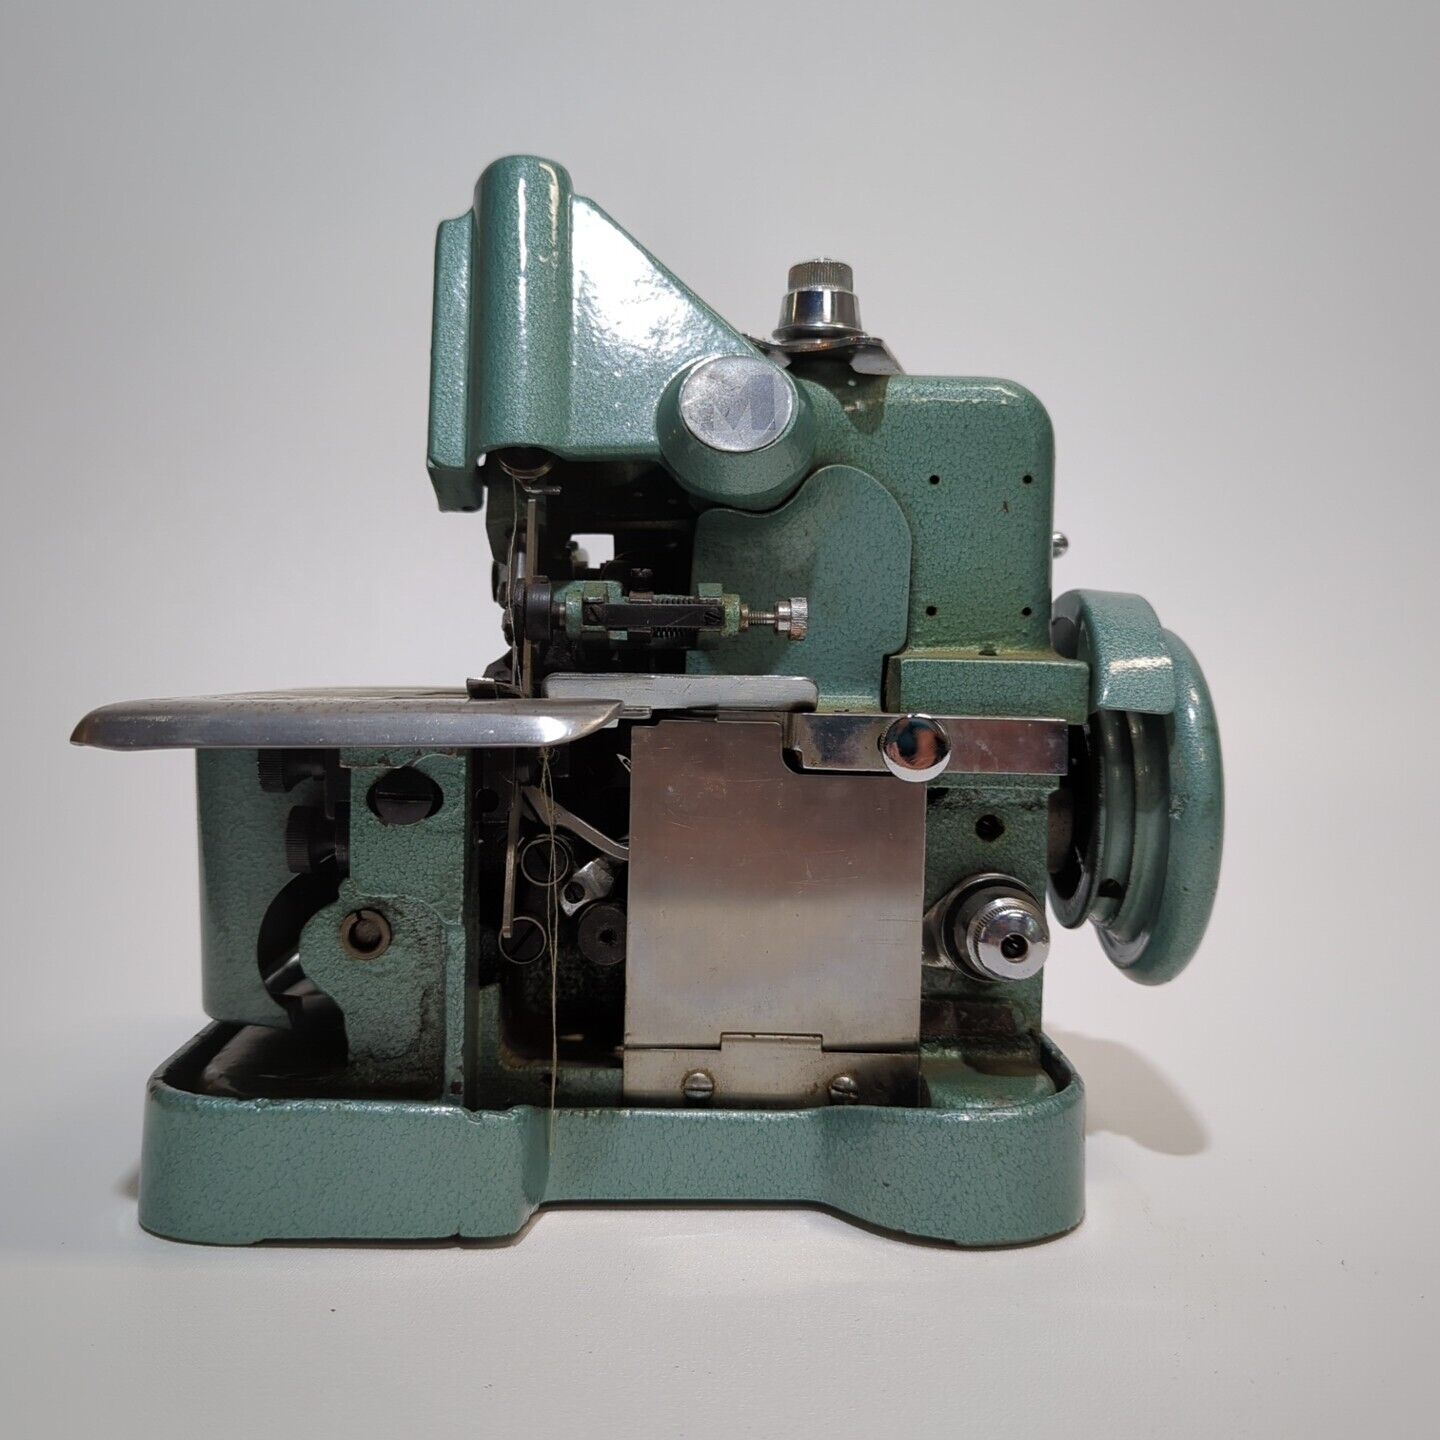 Vintage Mercury M-81-3 Industrial Sewing Machine Green